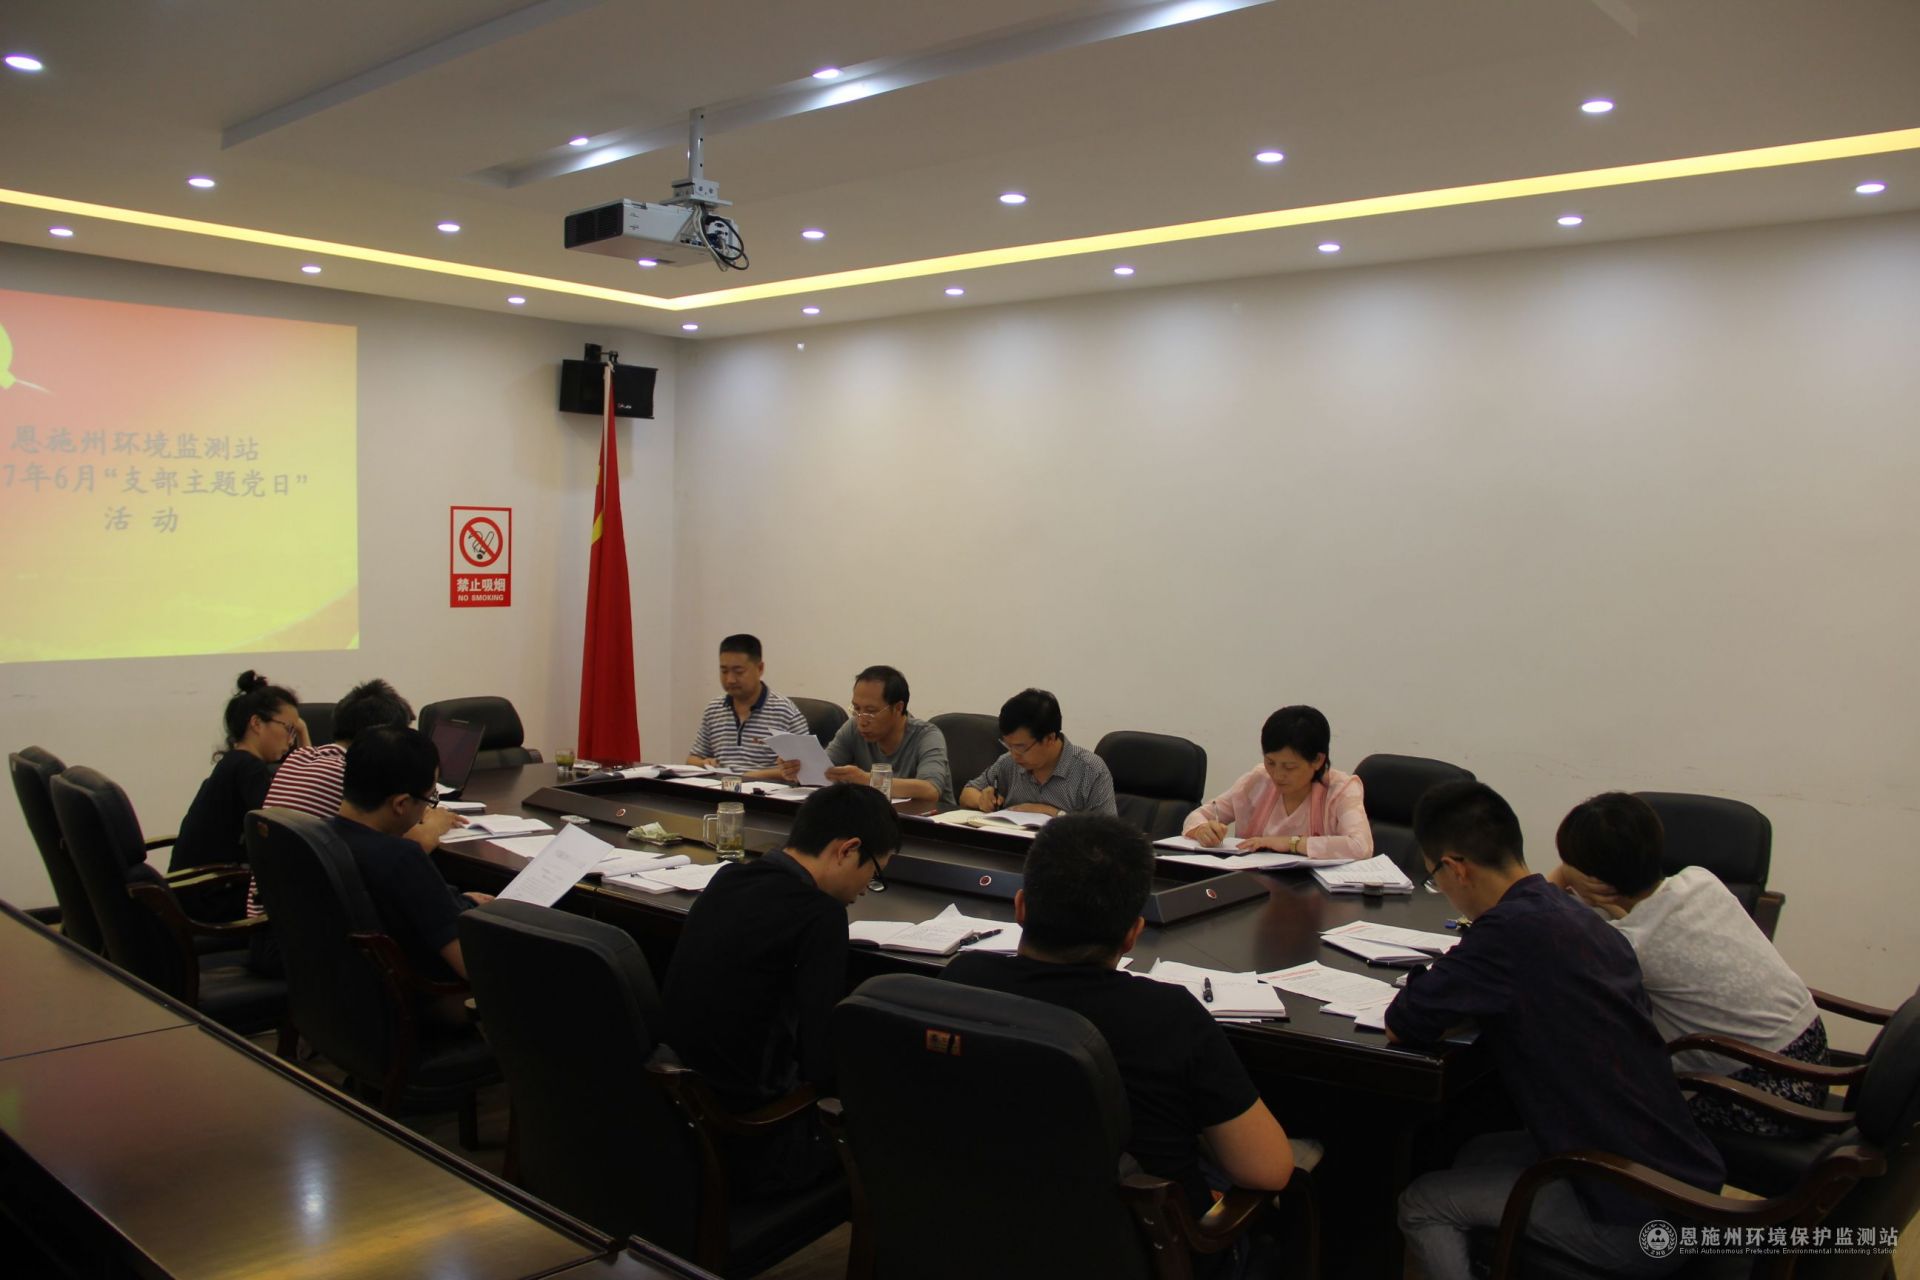  县林业局与兴旺村联合开展支部主题党日活动